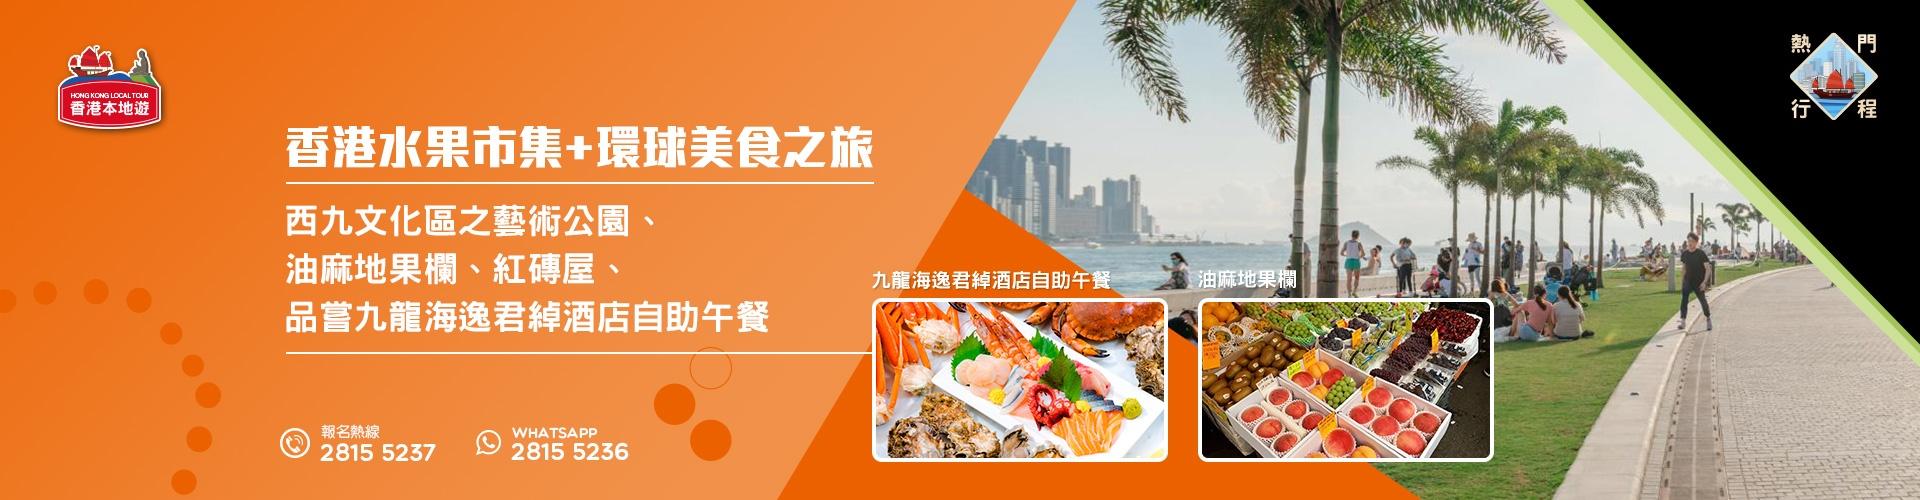 香港水果市集+環球美食之旅